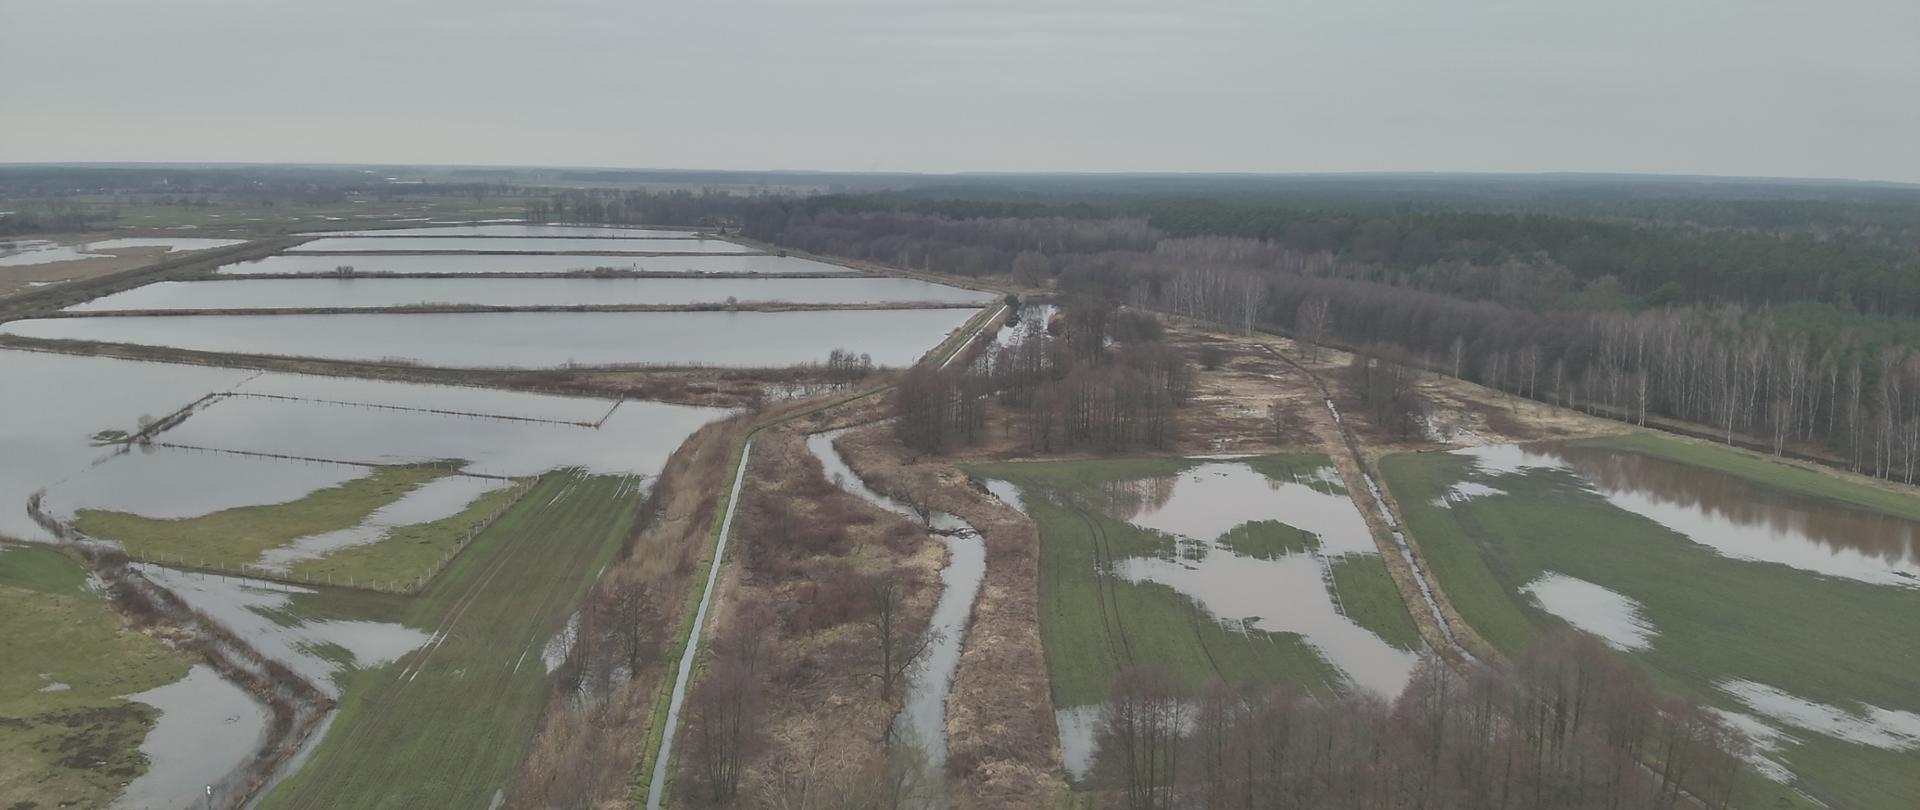 Podtopione pola uprawne na terenie powiatu kluczborskiego. Zdjęcie wykonane za pomocą drona. Na dalszym planie zbiorniki hodowlane.